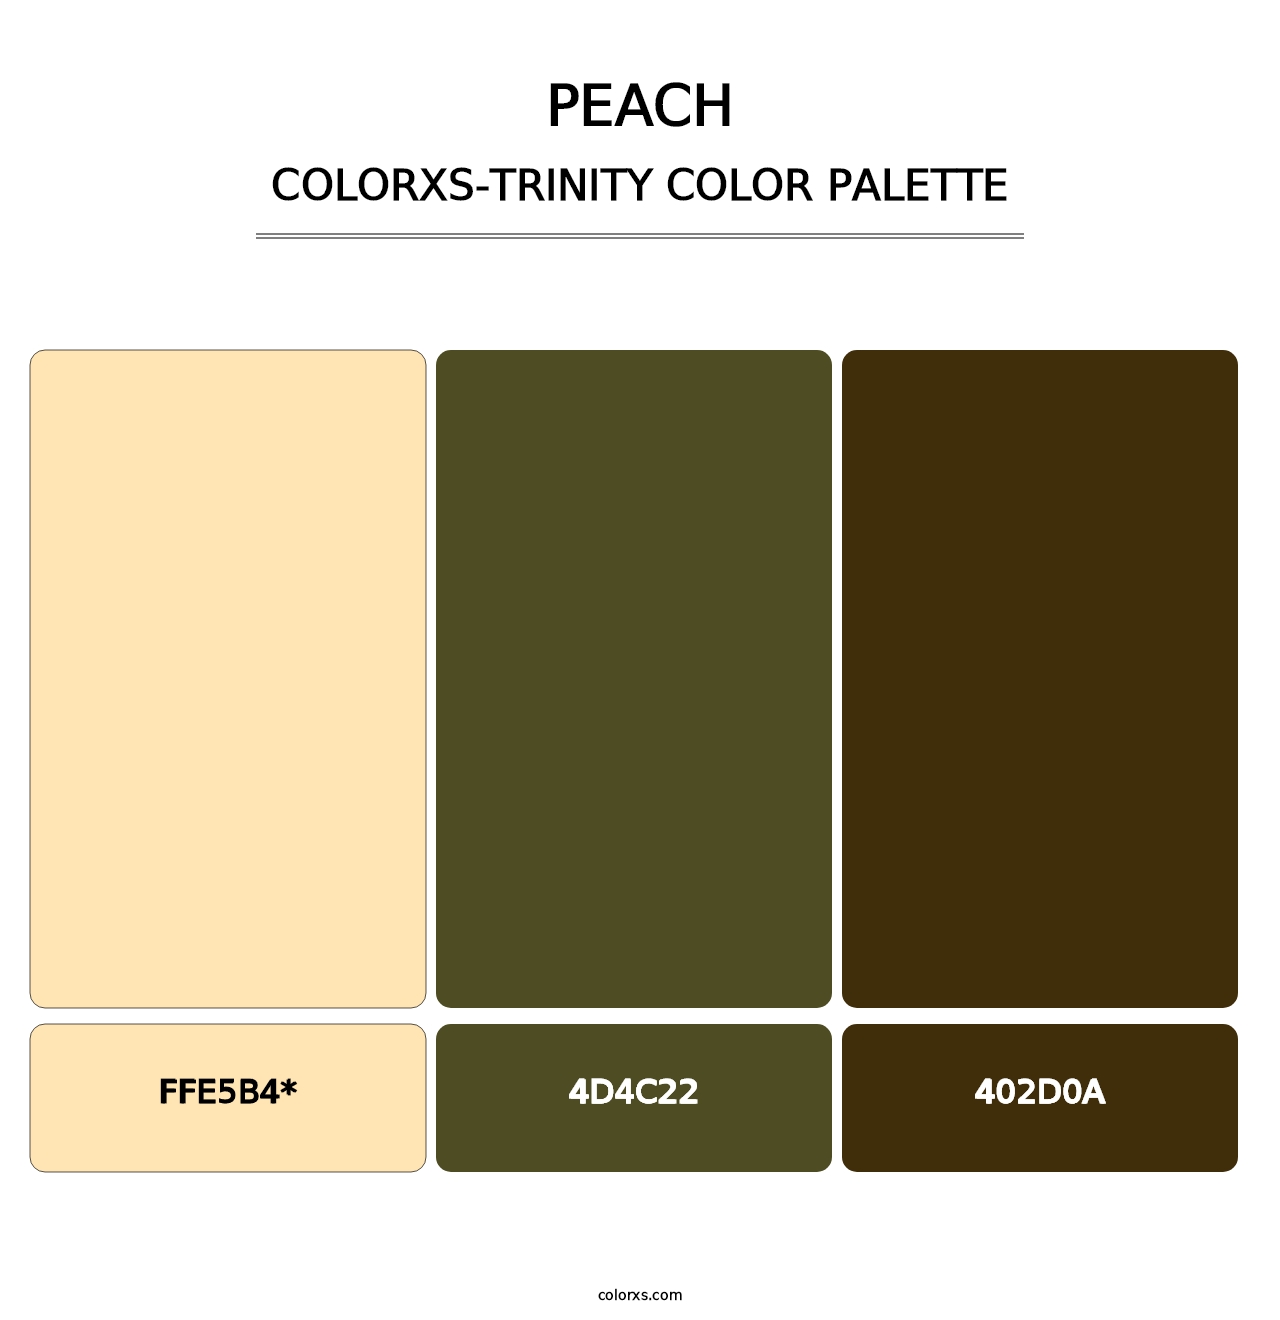 Peach - Colorxs Trinity Palette